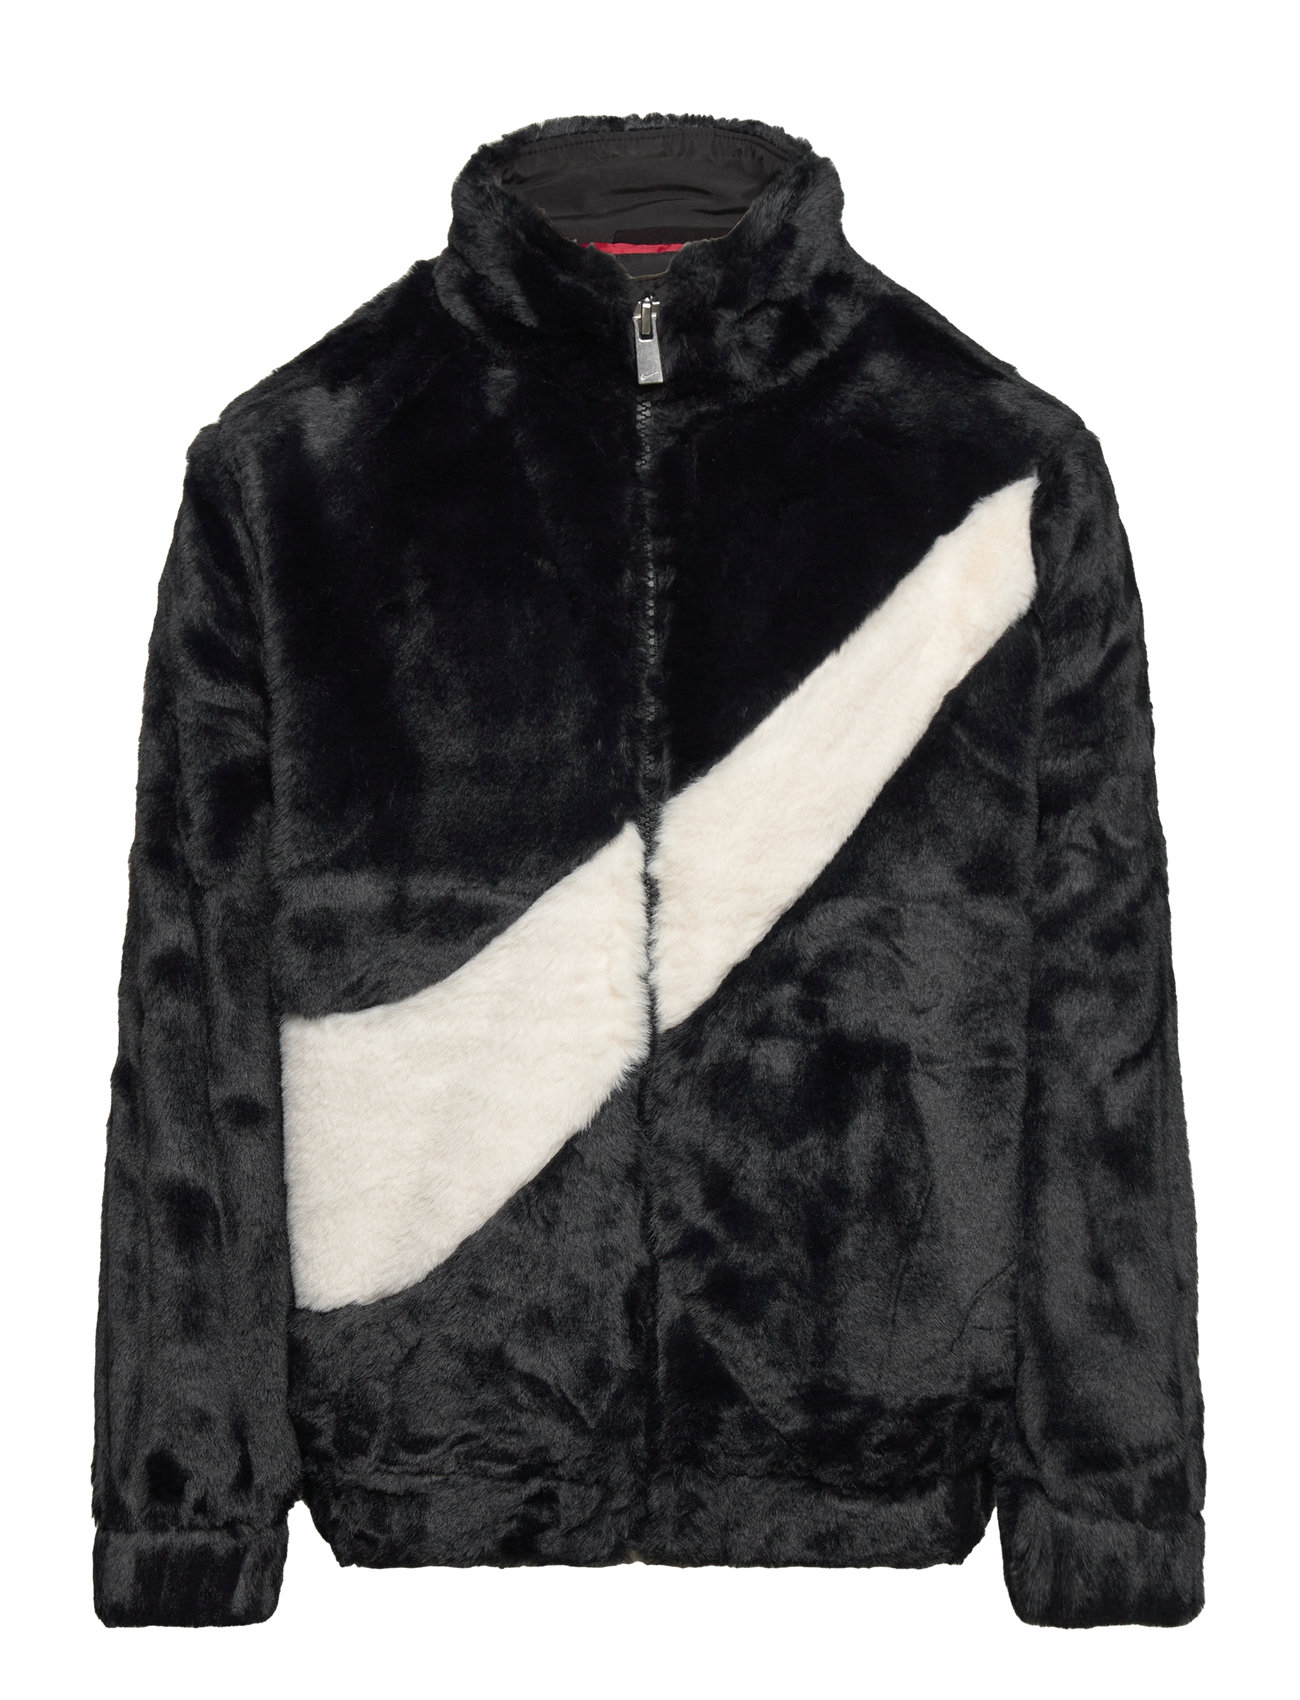 Big Swoosh Faux Fur Jacket Sport Fleece Outerwear Fleece Jackets Black Nike